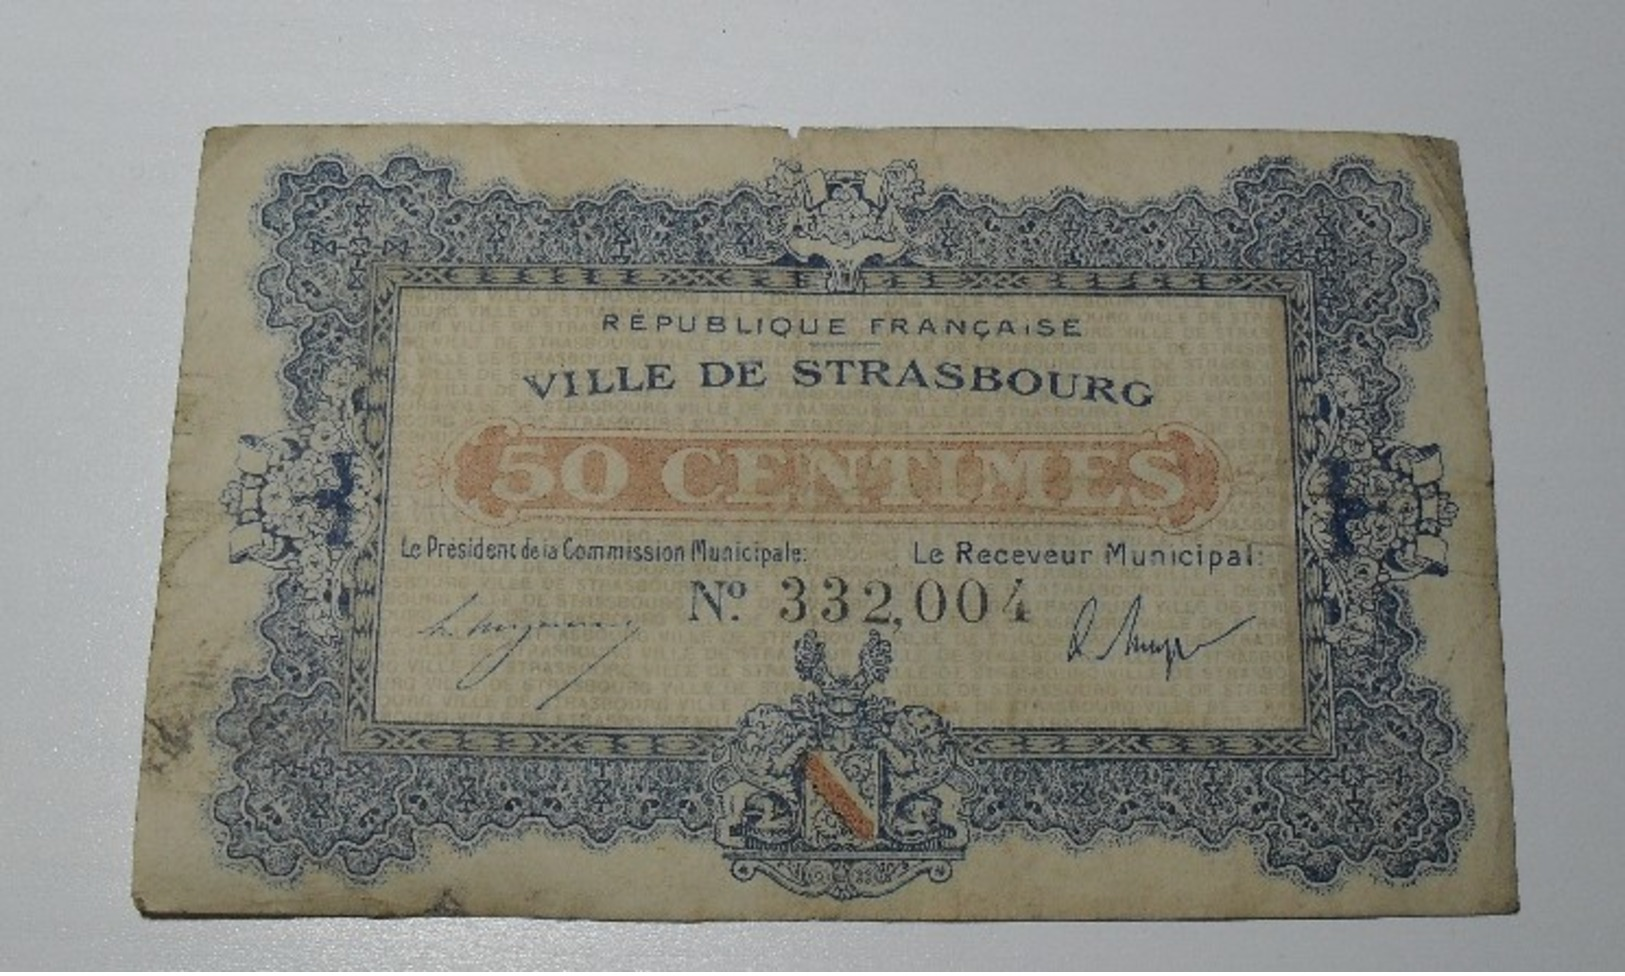 1918 - France - 50 CENTIMES, Ville De Strasbourg, N° 332,004 - Bons & Nécessité